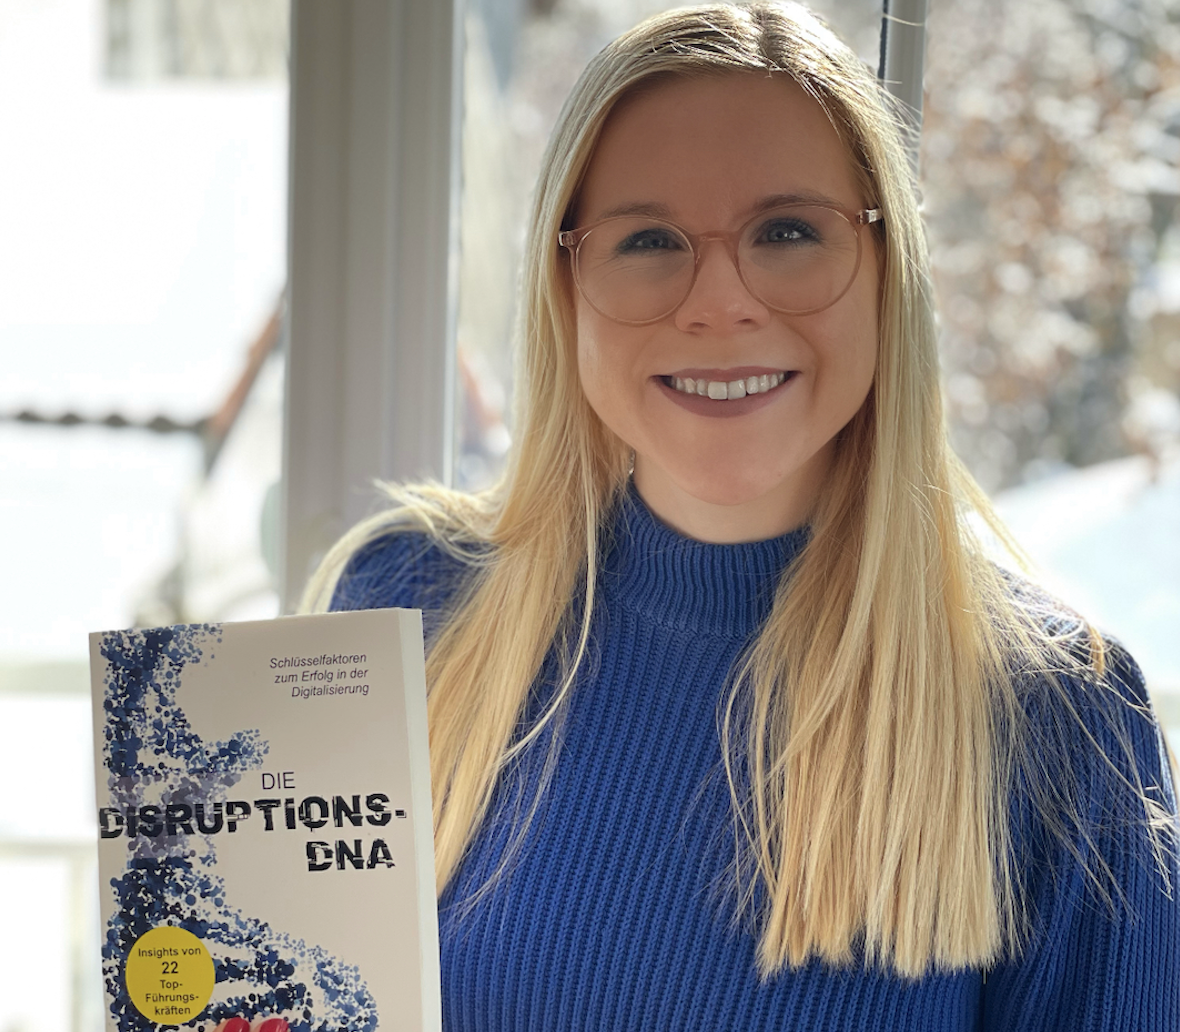 Britta Daffner mit dem Buch "Die Disruptions-DNA"